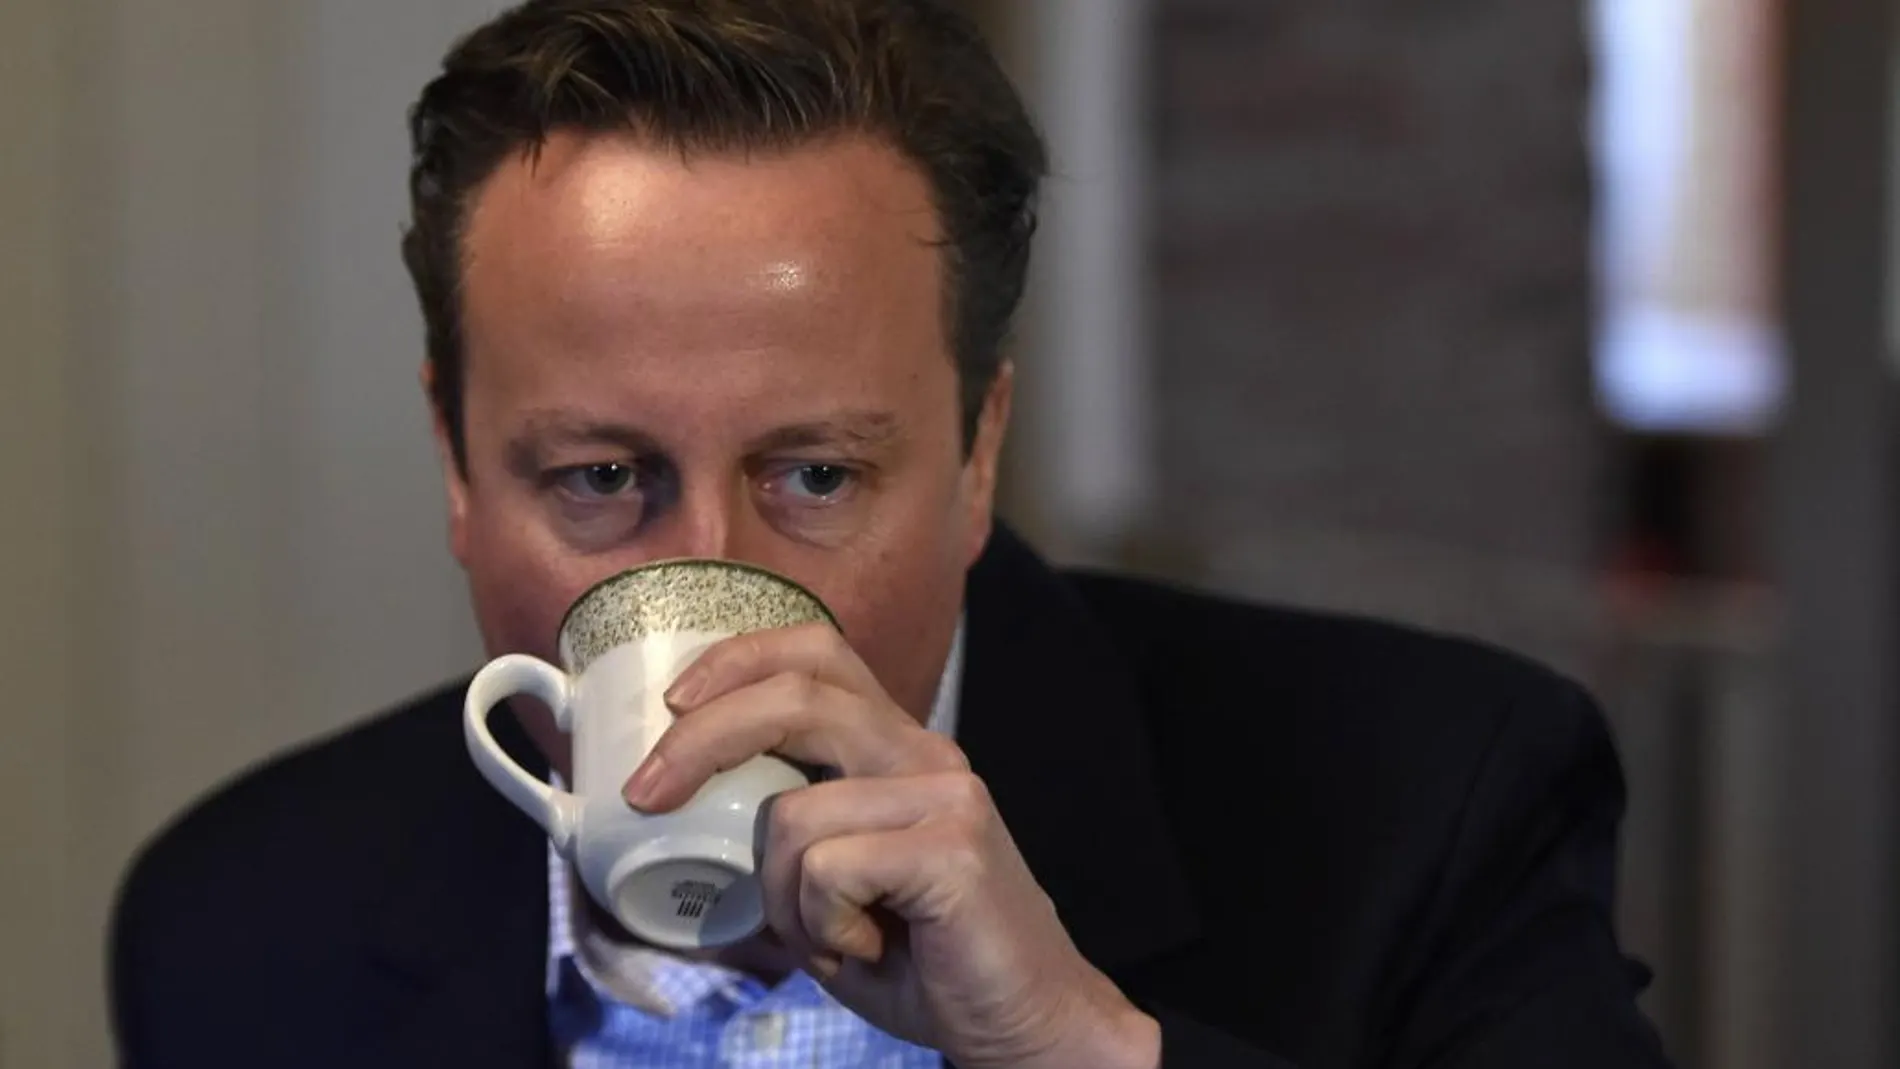 El primer ministro británico, David Cameron, durante su campaña electoral